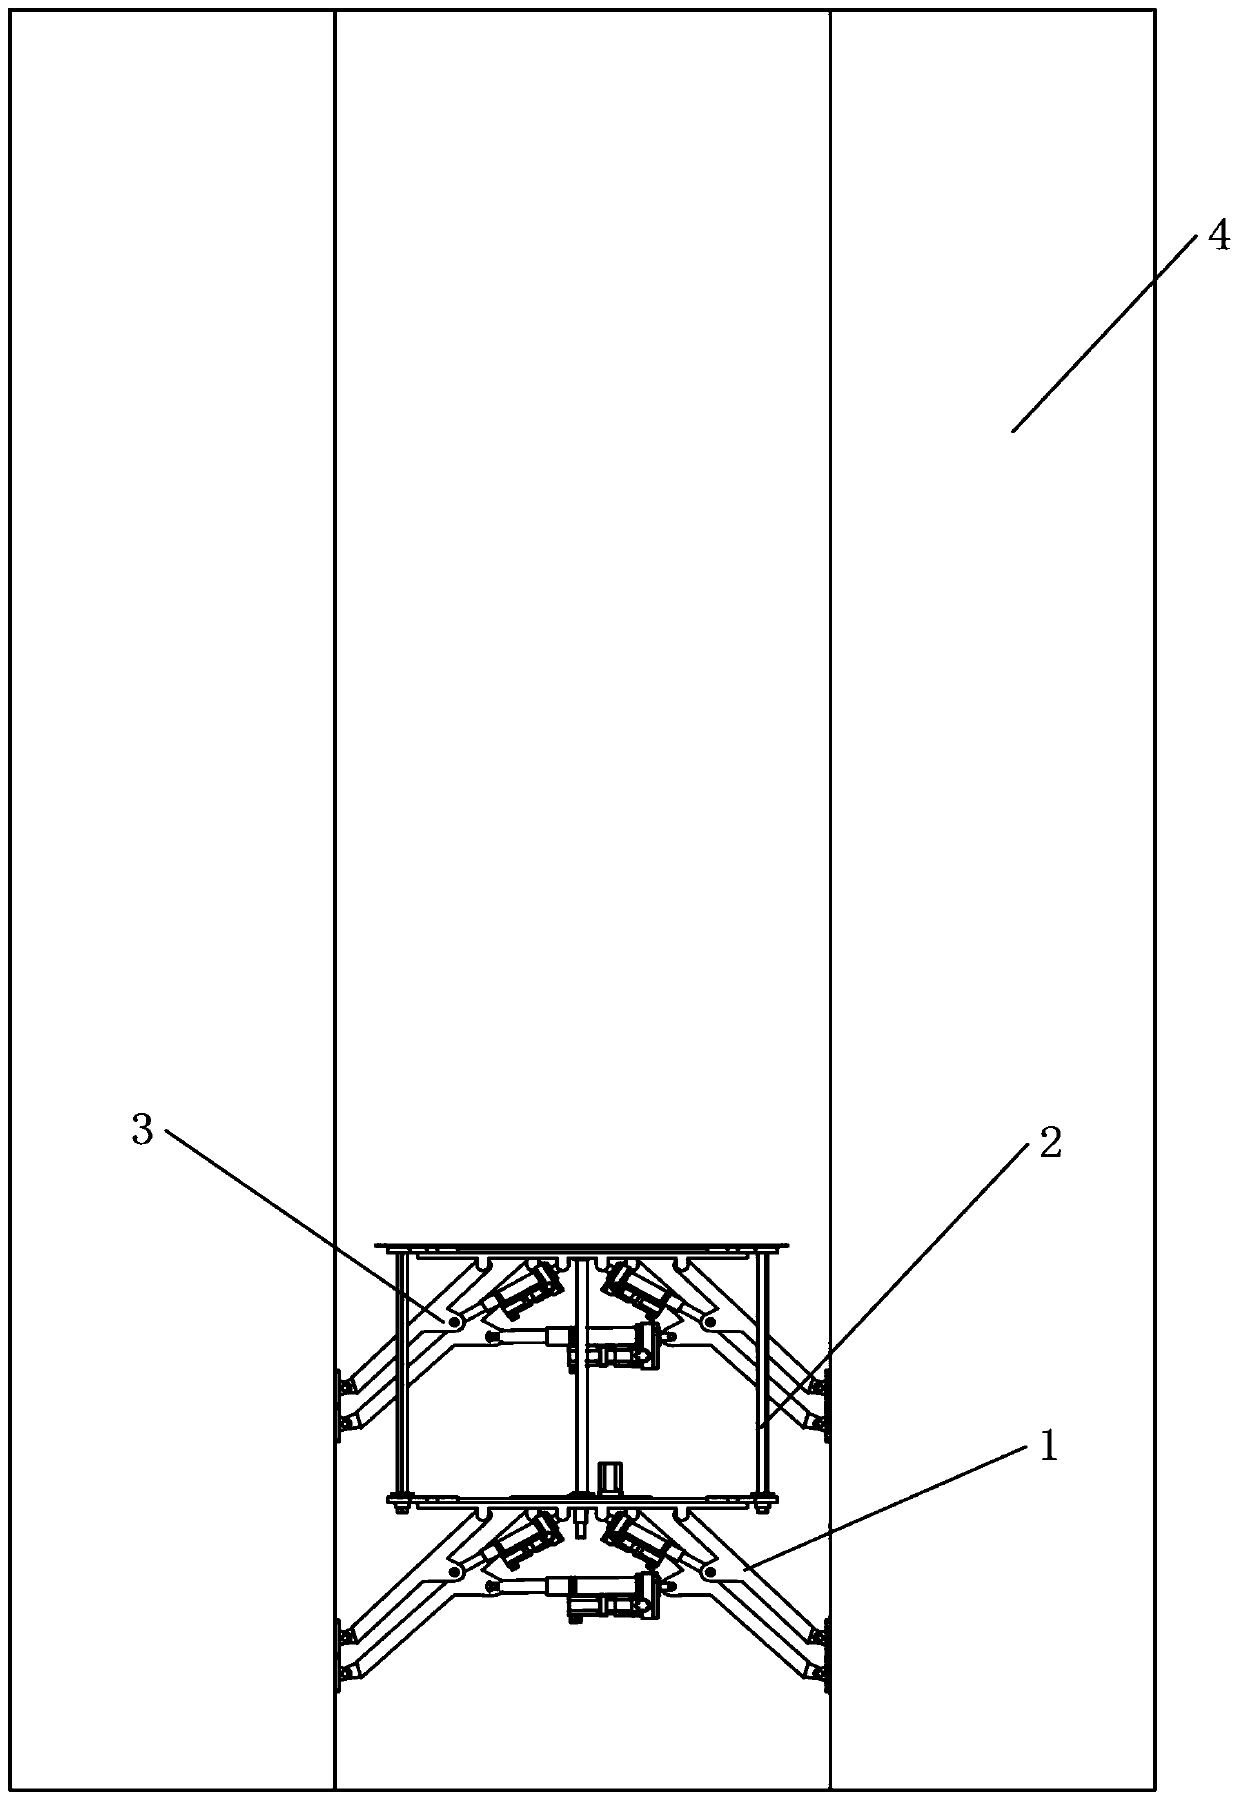 A self-climbing hoistway operation platform